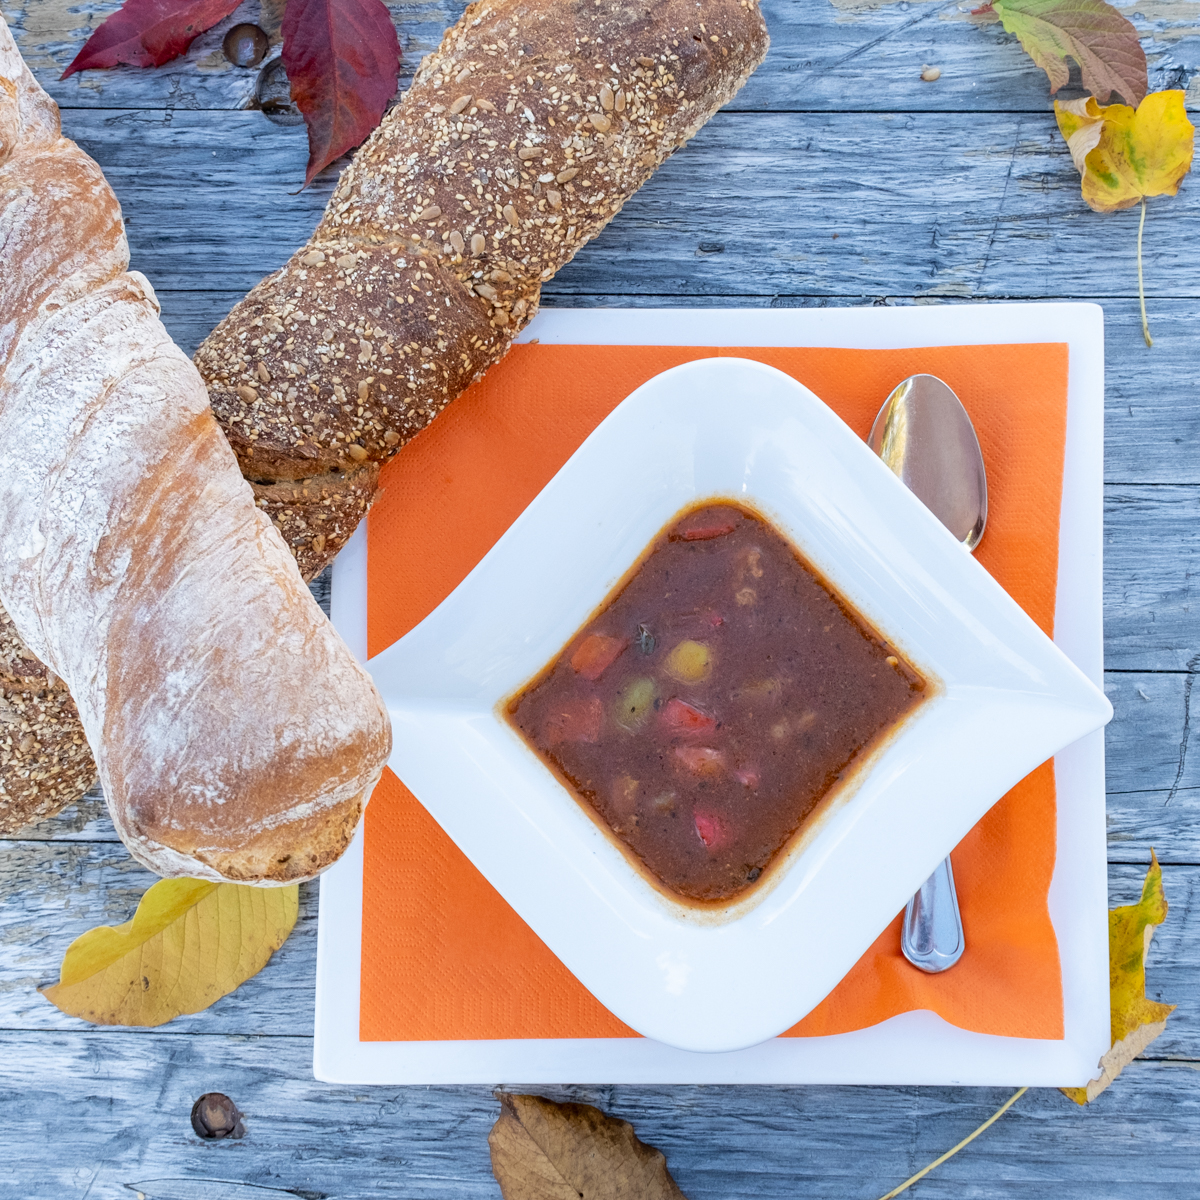 Herbstzeit ist Suppenzeit! Würzige Gulaschsuppe mit viel Einlage als Hauptgang (400ml pro Person) 10,90 € Mit ofenfrischem Brot 11,90 € Auch als Vorspeise (250 ml) verfügbar